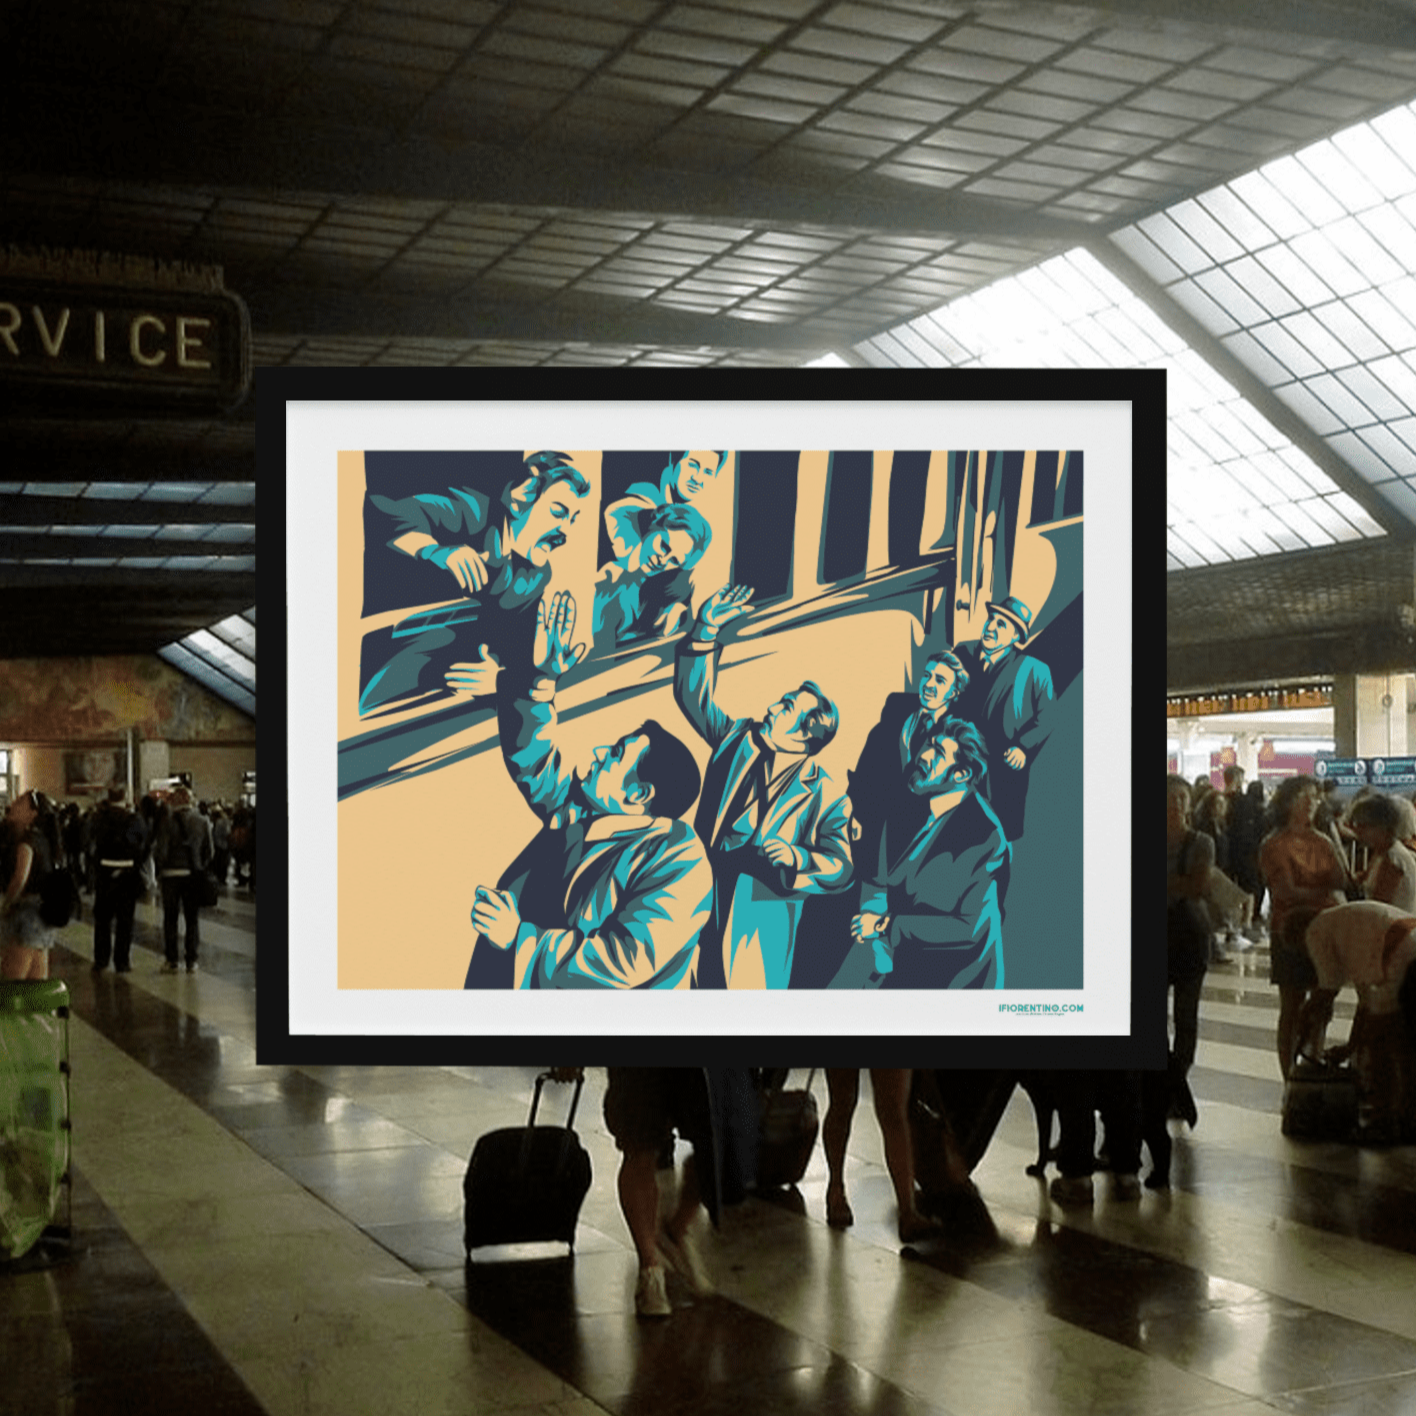 AMICI MIEI alla stazione (scene tratte dal film) - poster fiorentini - poster firenze - regalo fiorentino - fiorentino  - foppeddittelo